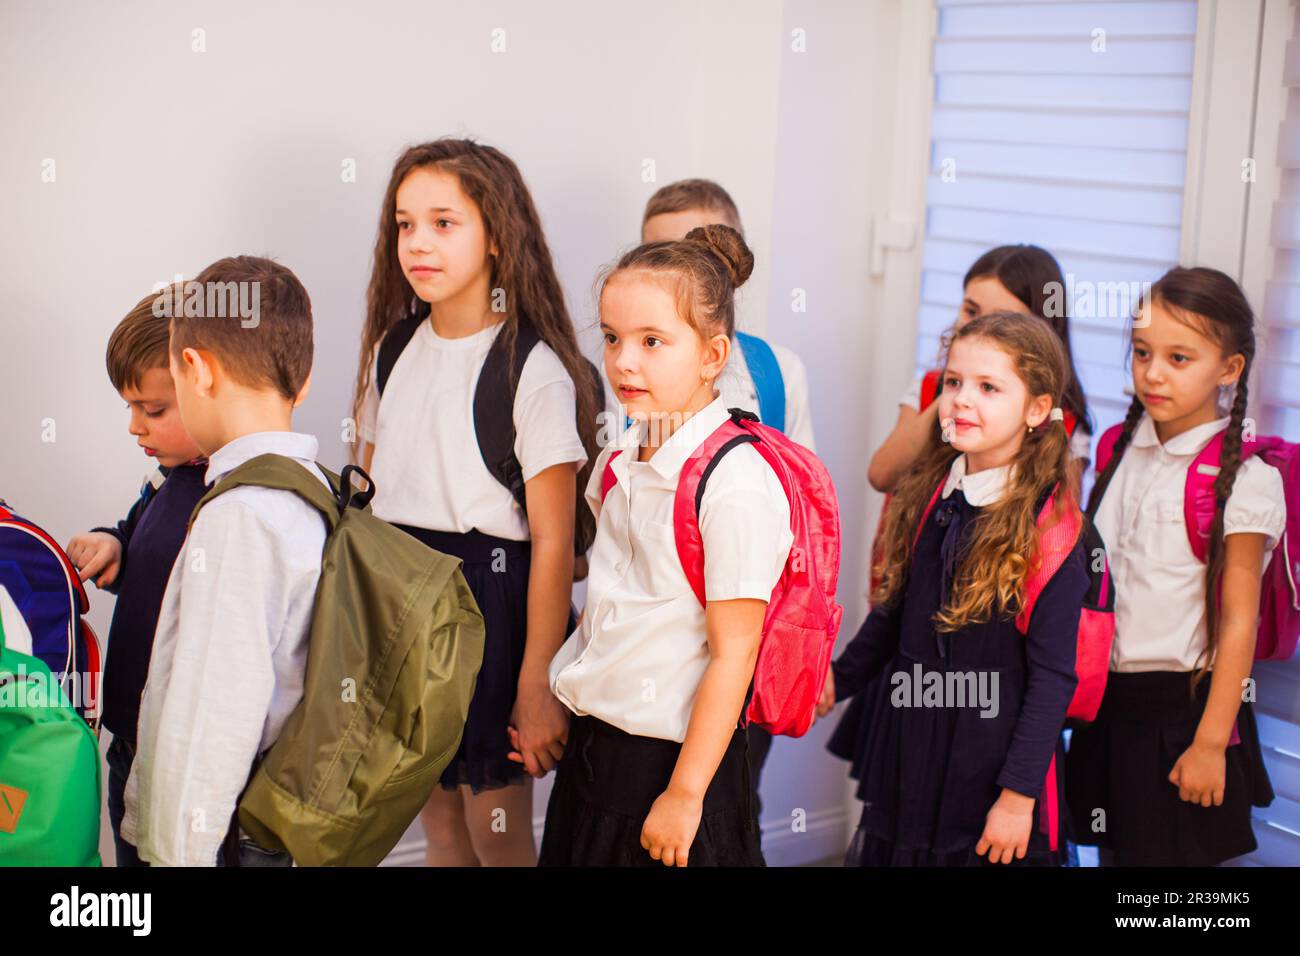 Bambini in uniforme con zaini che vanno in classe Foto Stock